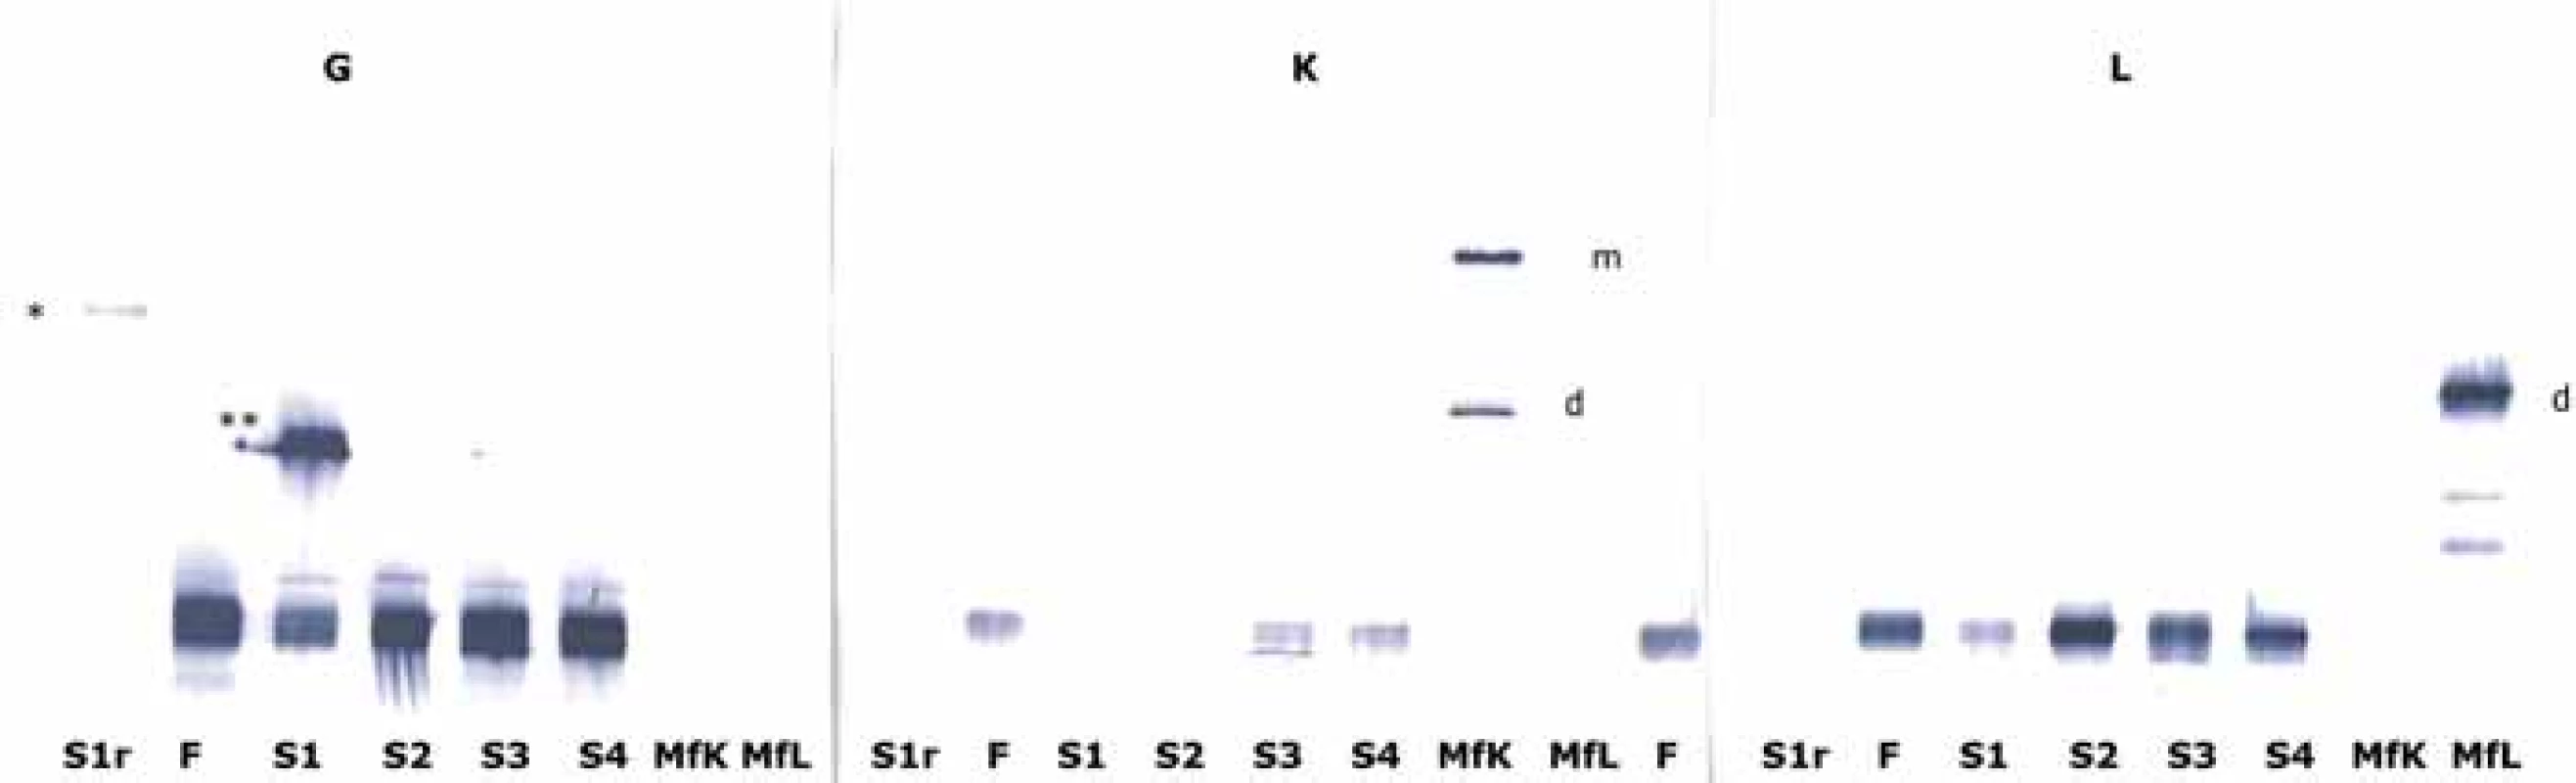 Výsledky SDS elektroforézy následované blotováním na nitrocelulózovou membránu a imunodetekcí těžkých řetězců imunoglobulinu
gama (G), lehkých řetězců kappa (K) a lambda (L). Anoda je nahoře. Kromě pruhu v S1r (vzorek redukovaný dithiotreitolem)
byly použity neredukční podmínky. Abnormální fragment řetězce gama migruje mírně pomaleji než fLC monomer v redukovaném
vzorku (*) a je mírně pomalejší než FLC dimer v neredukovaném vzorku (**), současně zřetelně rychleji než monomery IgG (dole), které
nereagovaly ani s jednou protilátkou proti lehkému řetězci kappa nebo lambda. Ve srovnání s pozicemi monomerů a dimerů fLC (MfK
a MfL) a transferinu (v jiném experimentu, neuvedeno) je odhadovaná molekulová hmotnost fragmentu mezi 50 a 70 kDa.
FLC – volný lehký řetězec, m – monomer, d – dimer, MfK a MfL – monoklonální volné řetězce kappa a lambda, S1 – náš pacient, S2 – vzorky
séra s monoklonálním IgG lambda, S3 – vzorek séra s monoklonálním IgG kappa.
Porovnáním chování redukovaného vs. neredukovaného vzorku se domníváme, že paraprotein se bude pravděpodobně sestávat ze
dvou fragmentů řetězce gama (H2, zkrácený), jeho Fc části (proti které je protilátka namířena) spíše než z jednoduchého řetězce gama
(H1).